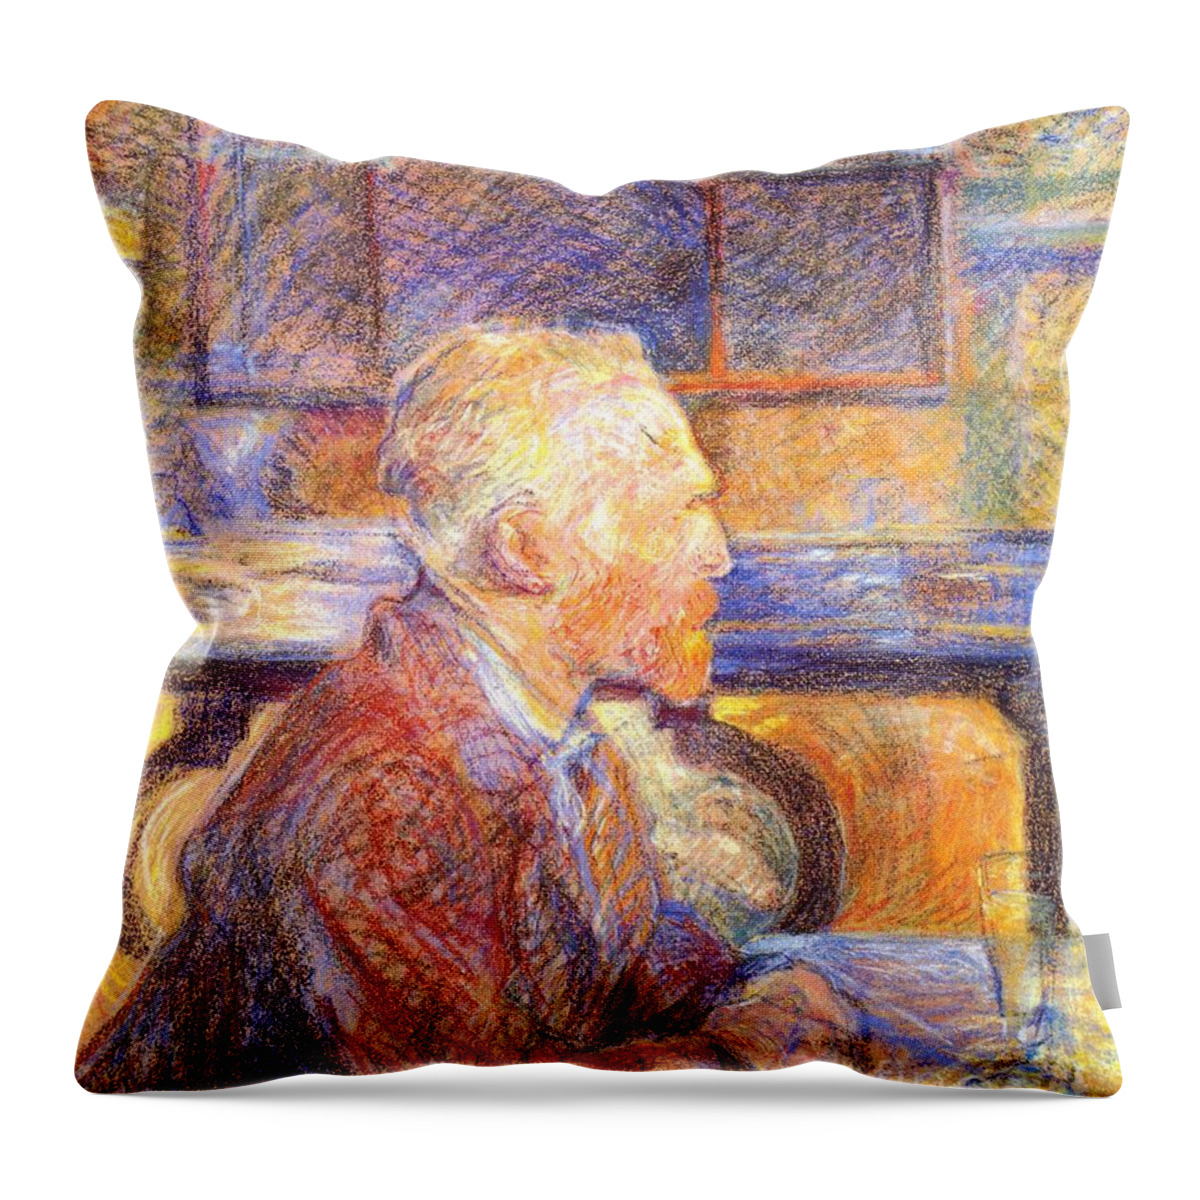 Henri De Toulouse-lautrec Throw Pillow featuring the painting Portrait of Vincent van Gogh by MotionAge Designs